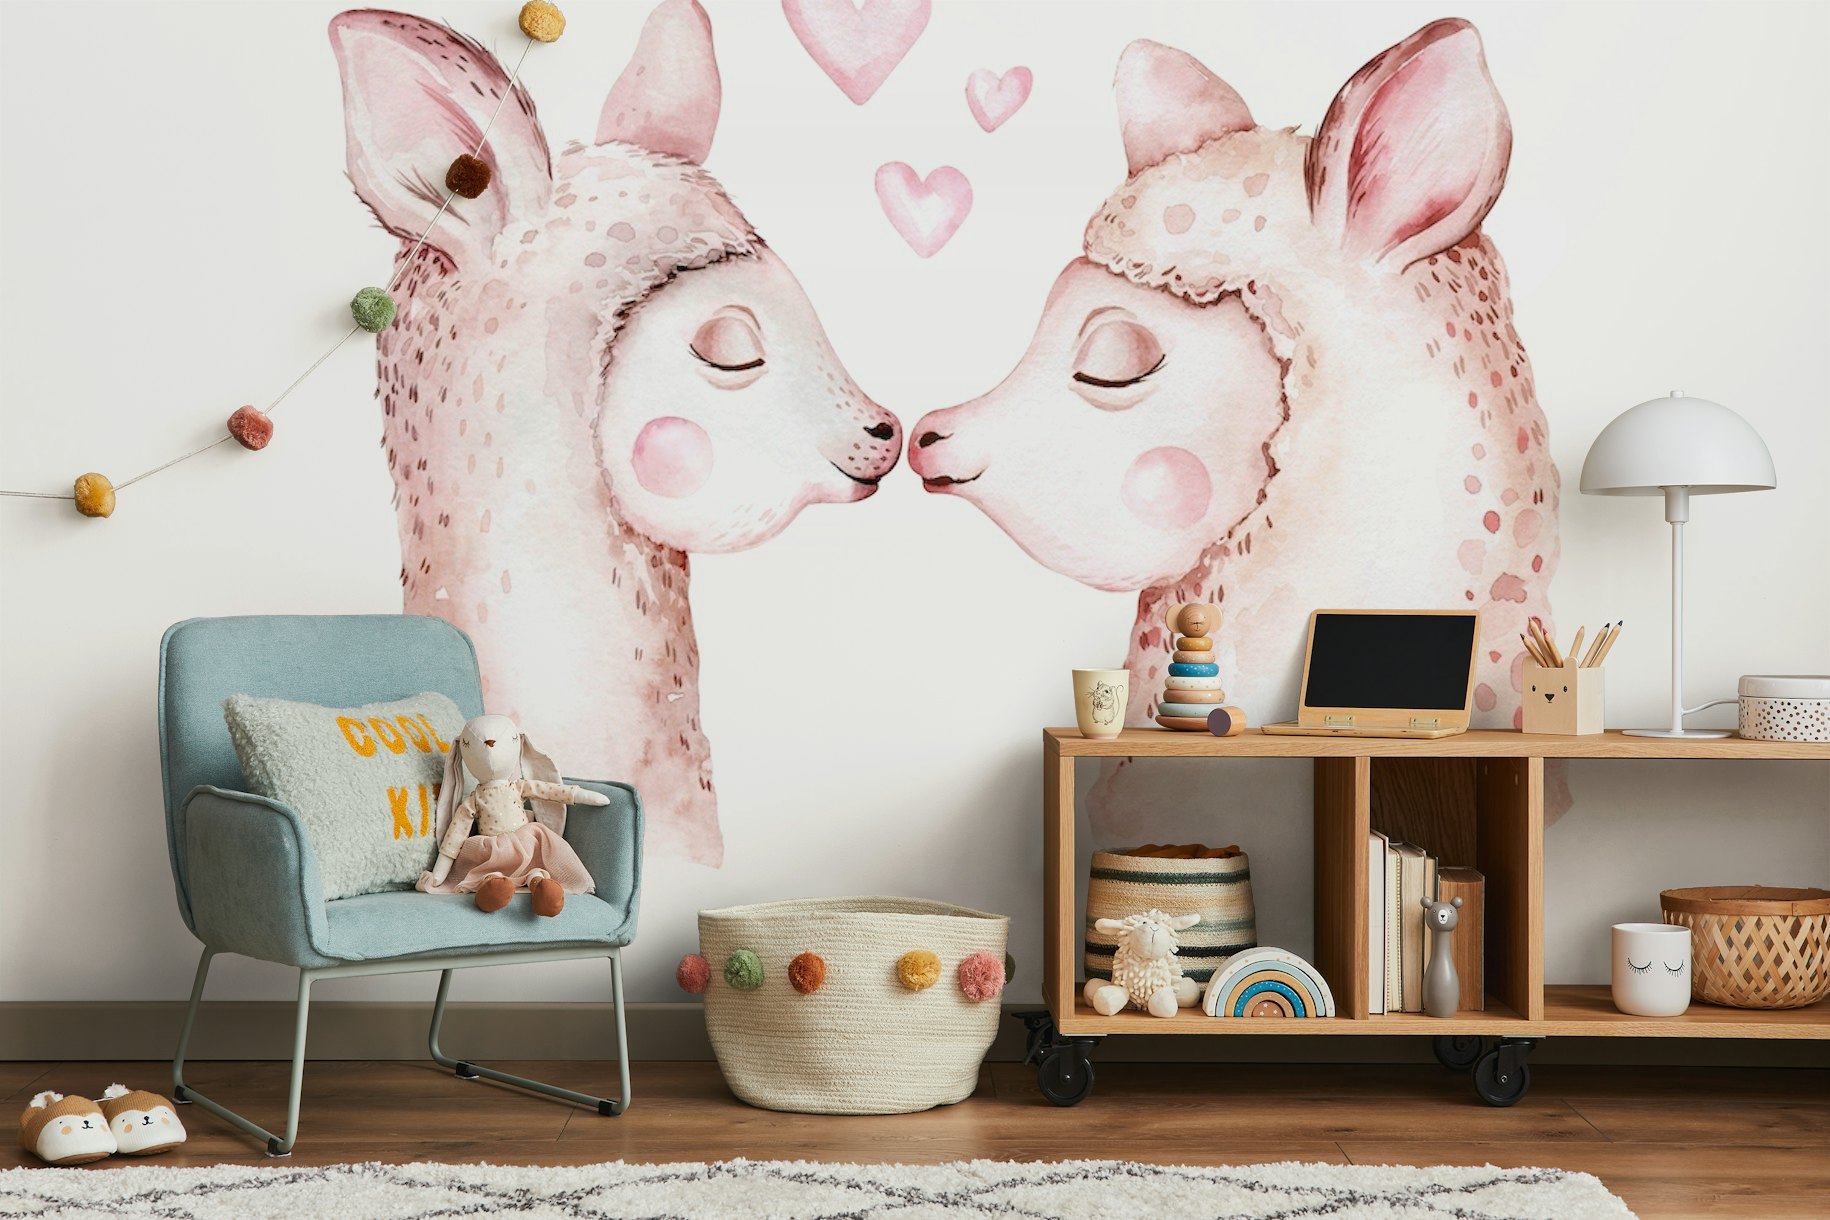 Llama love wallpaper